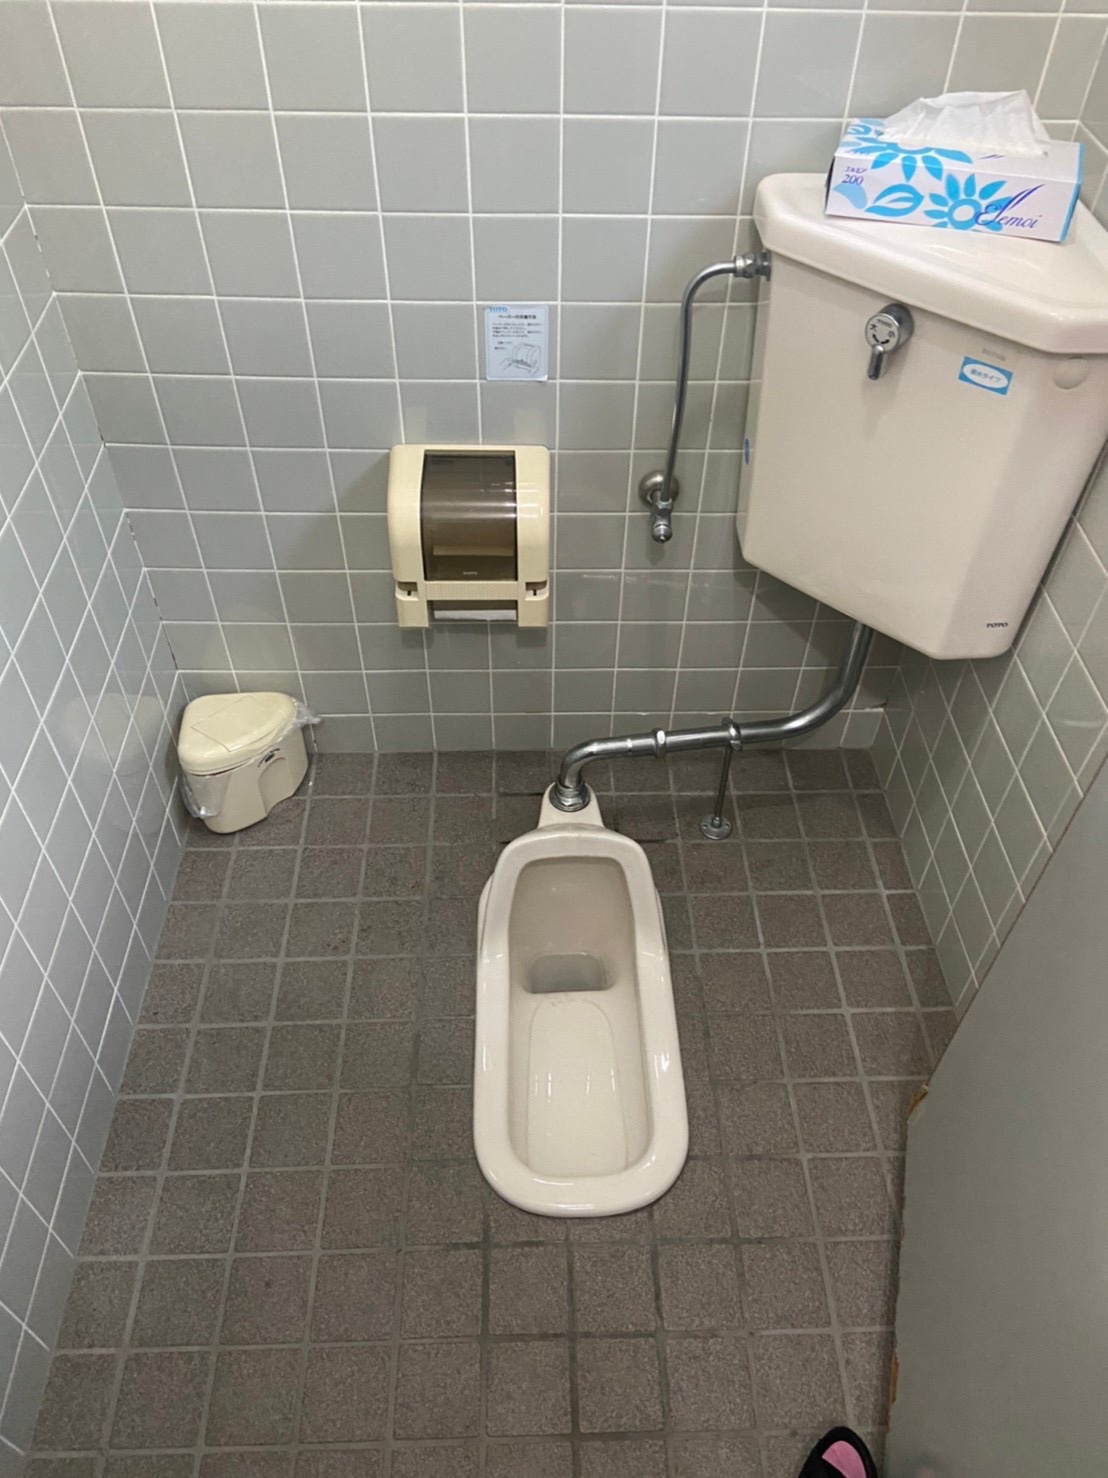 昔よくあった和式から様式トイレ